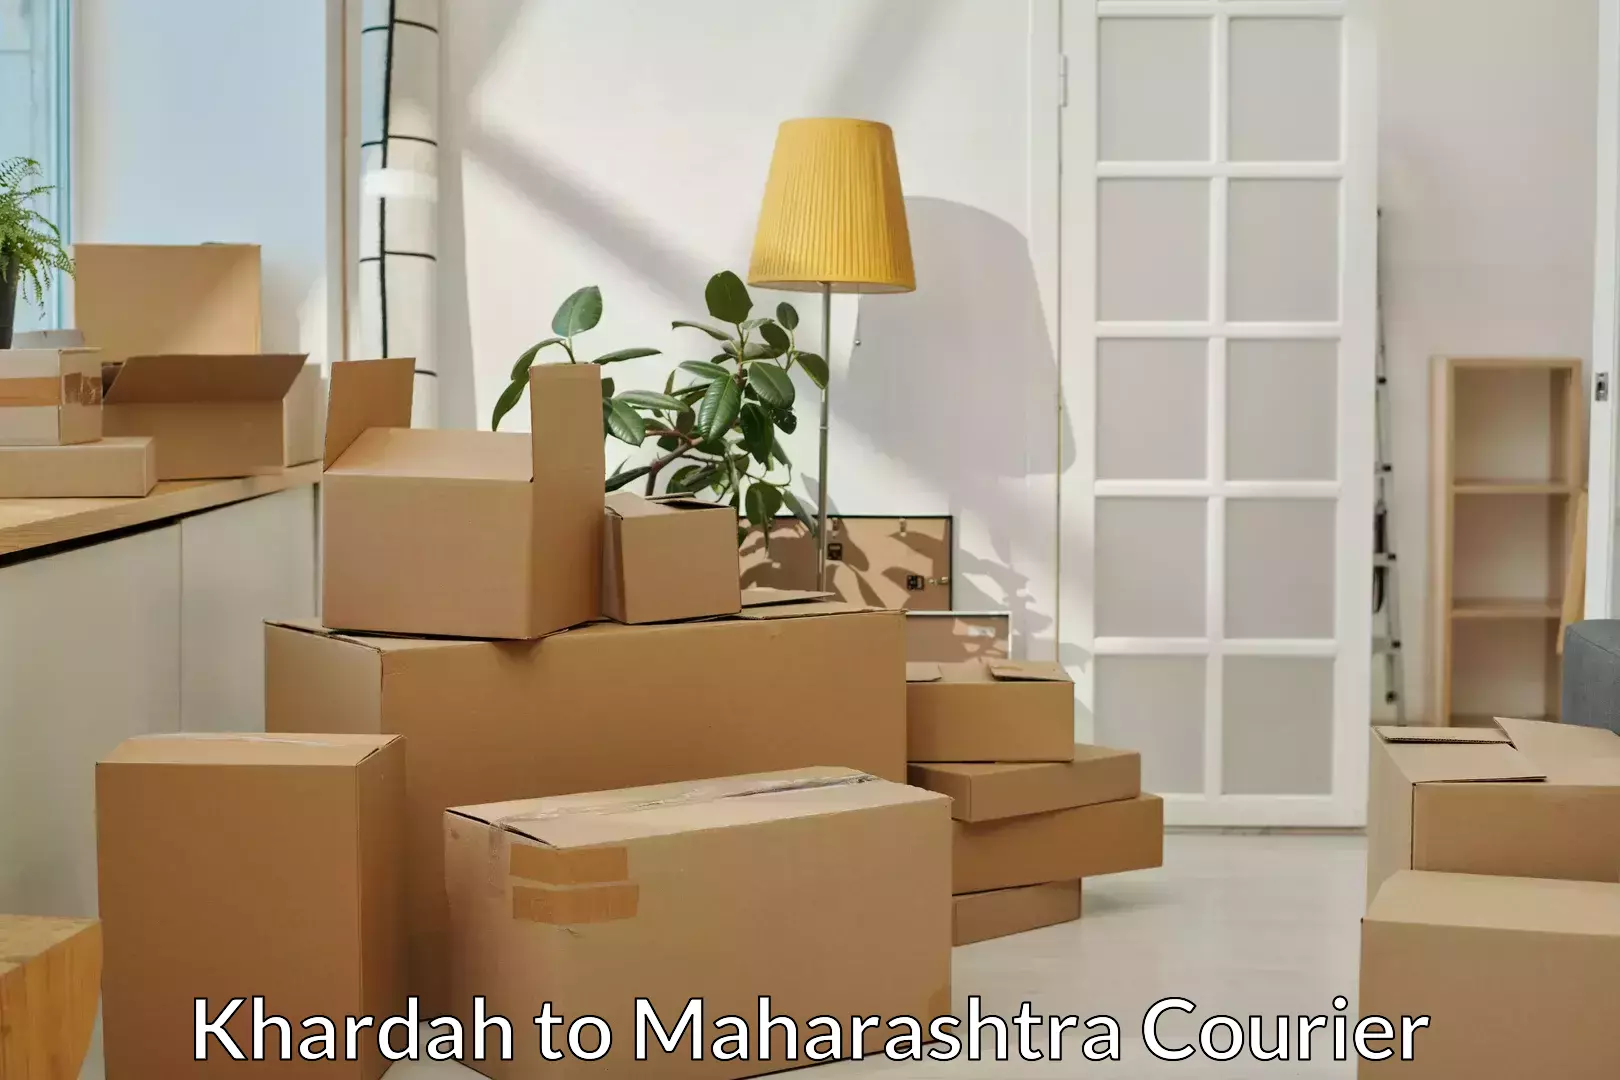 Home relocation experts Khardah to Maharashtra